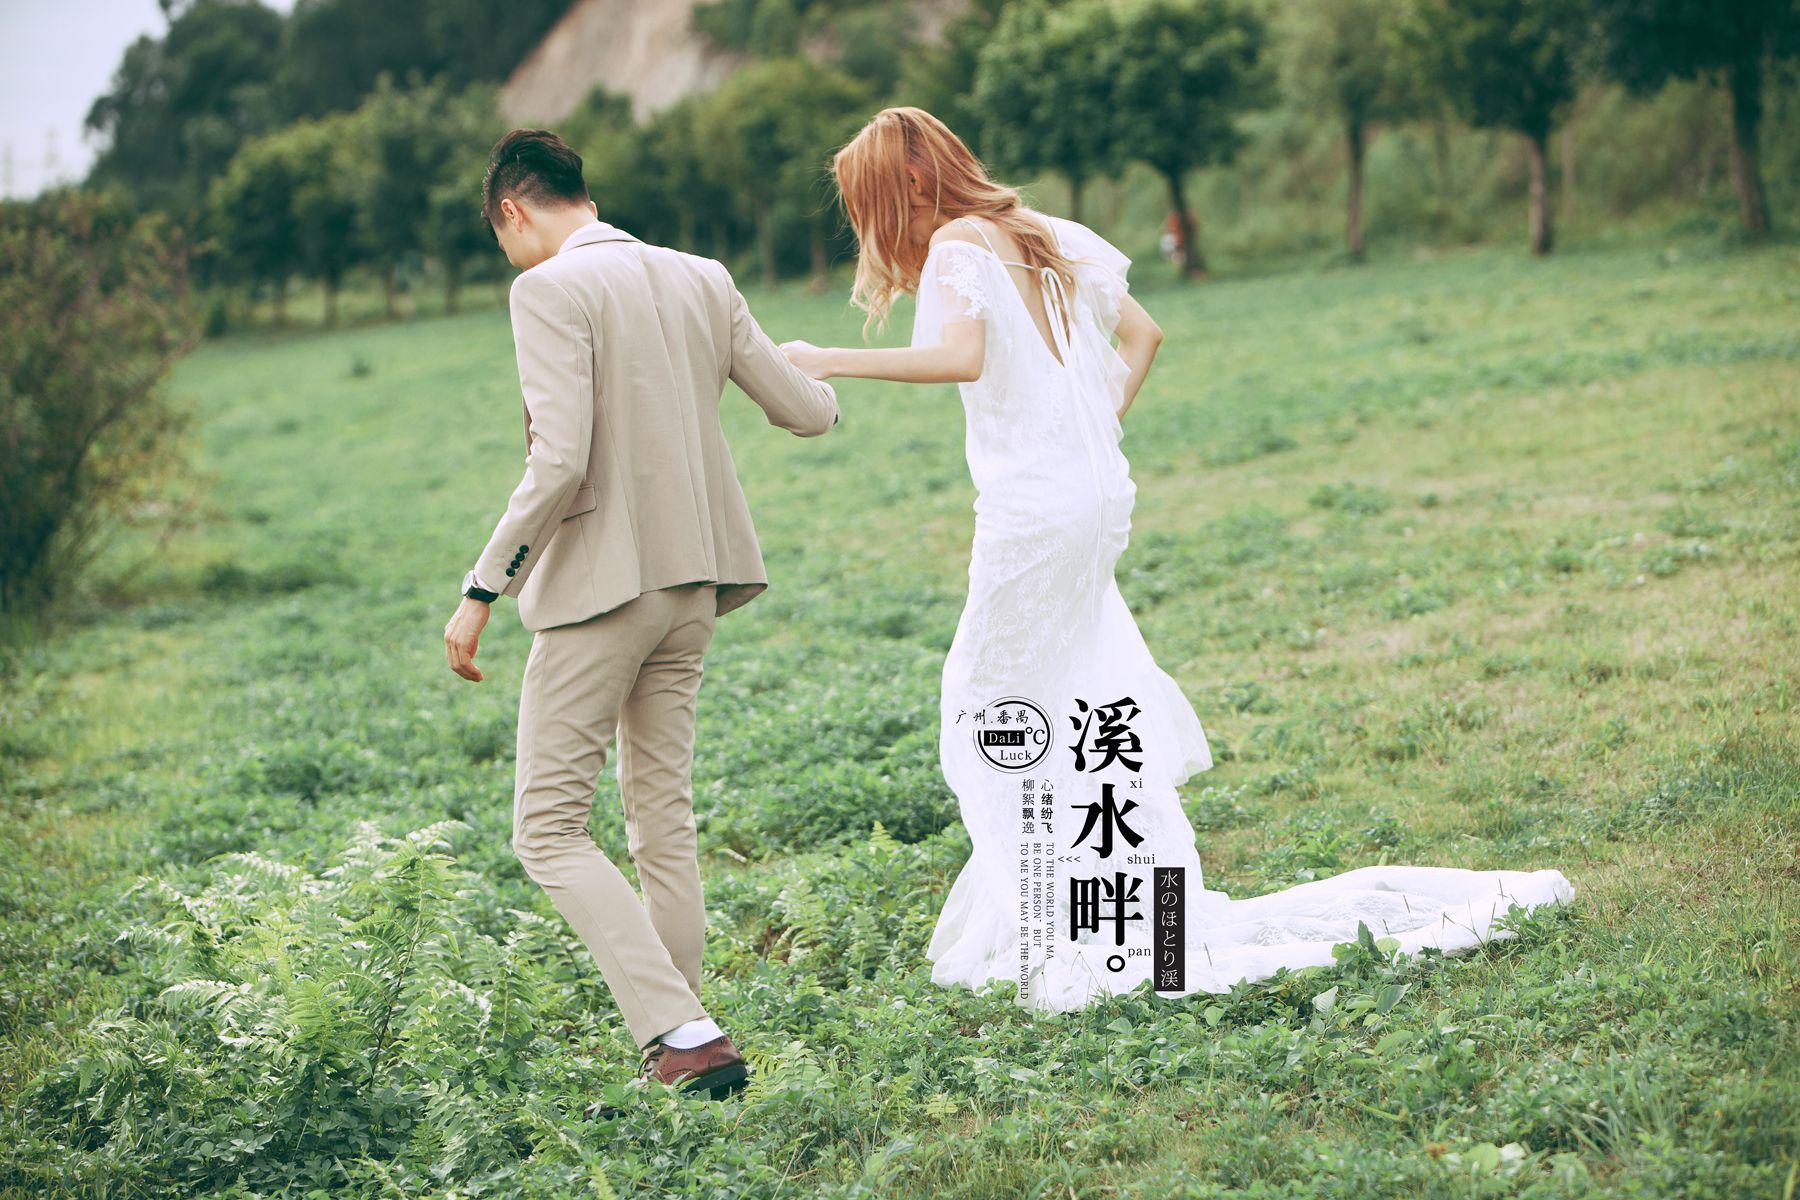 2017年7月广州婚纱照,湛江婚纱照,婚纱照图片